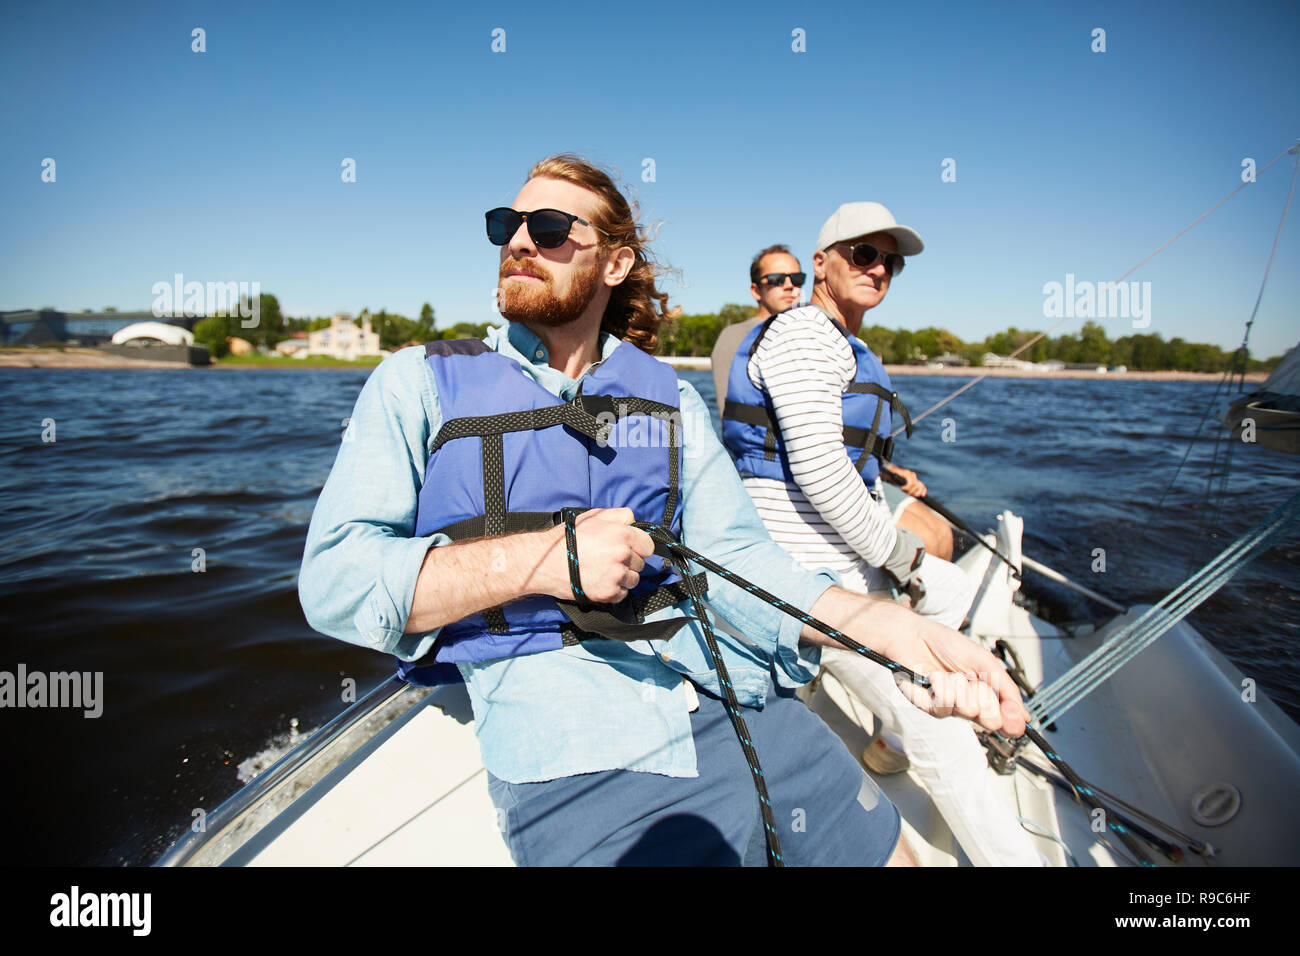 Men on yacht Stock Photo